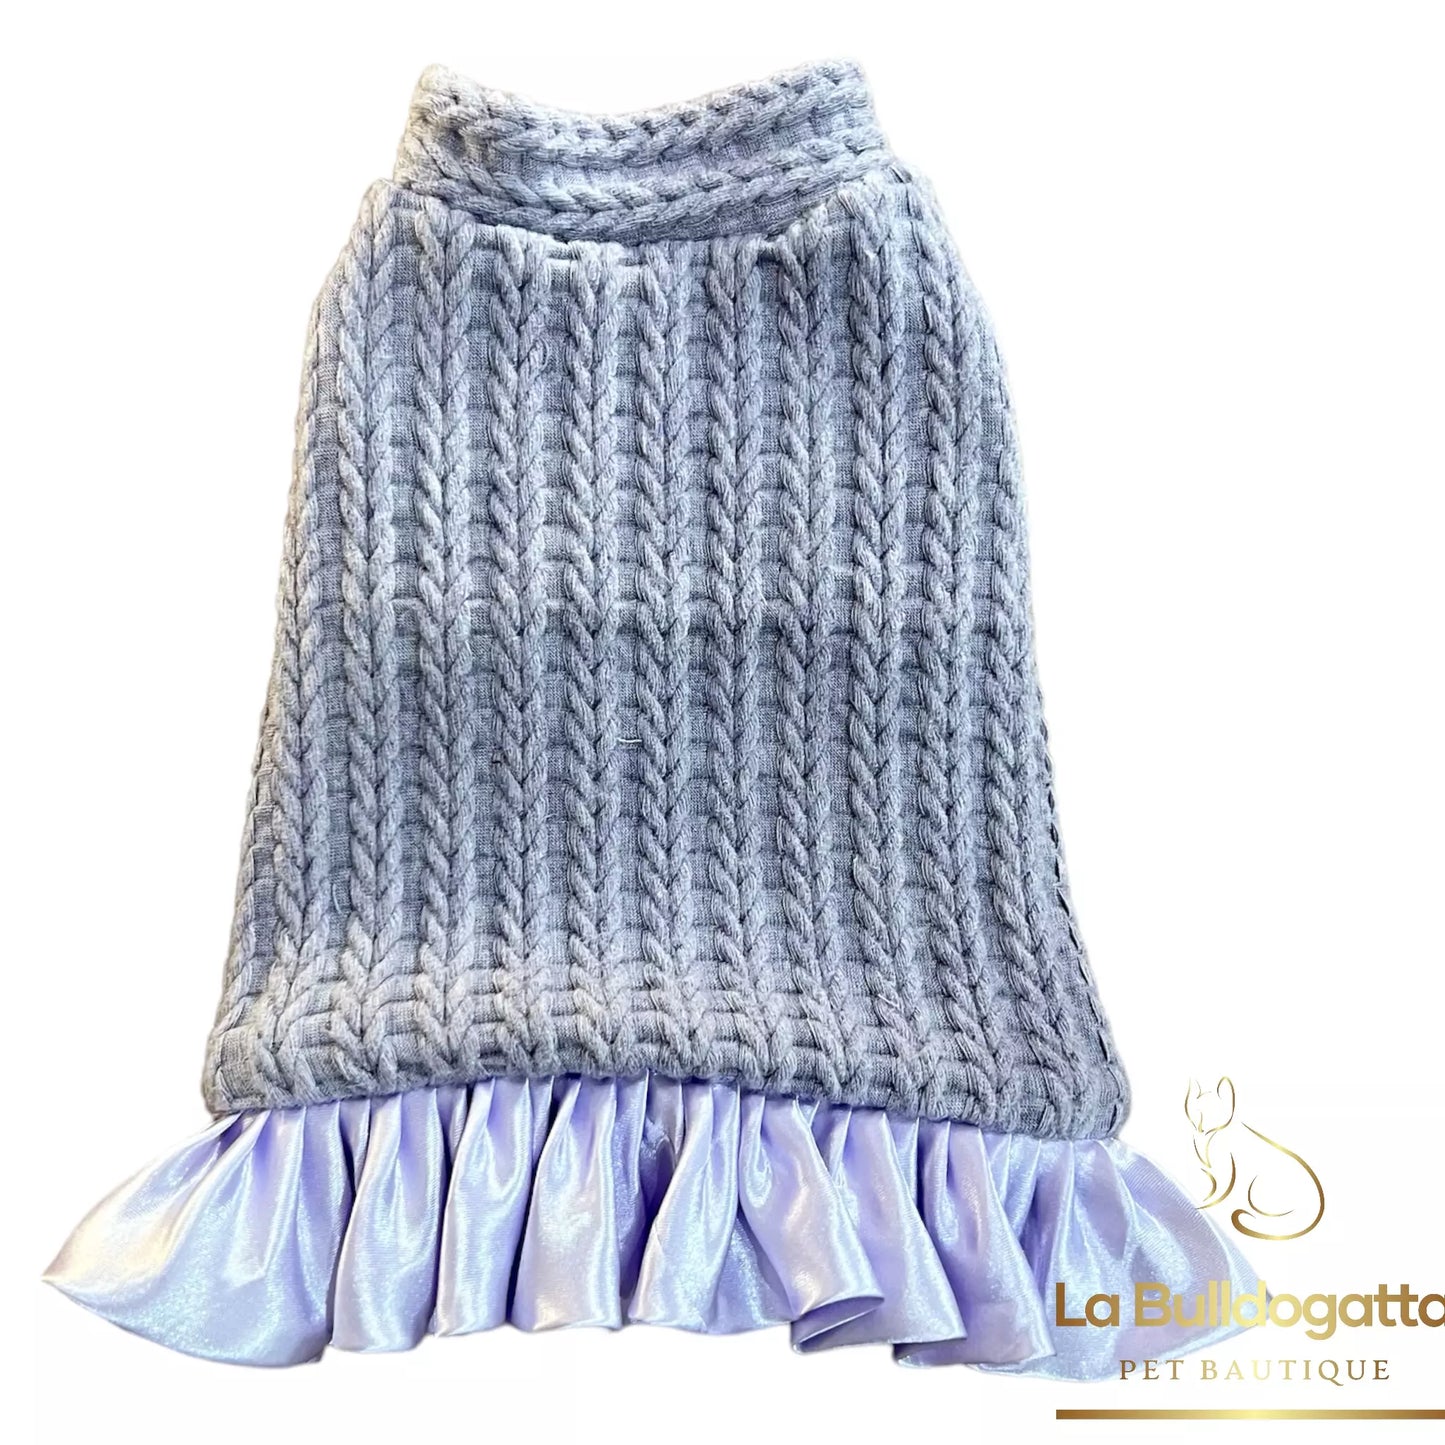 Lilac Knit angora dog ruffle dress